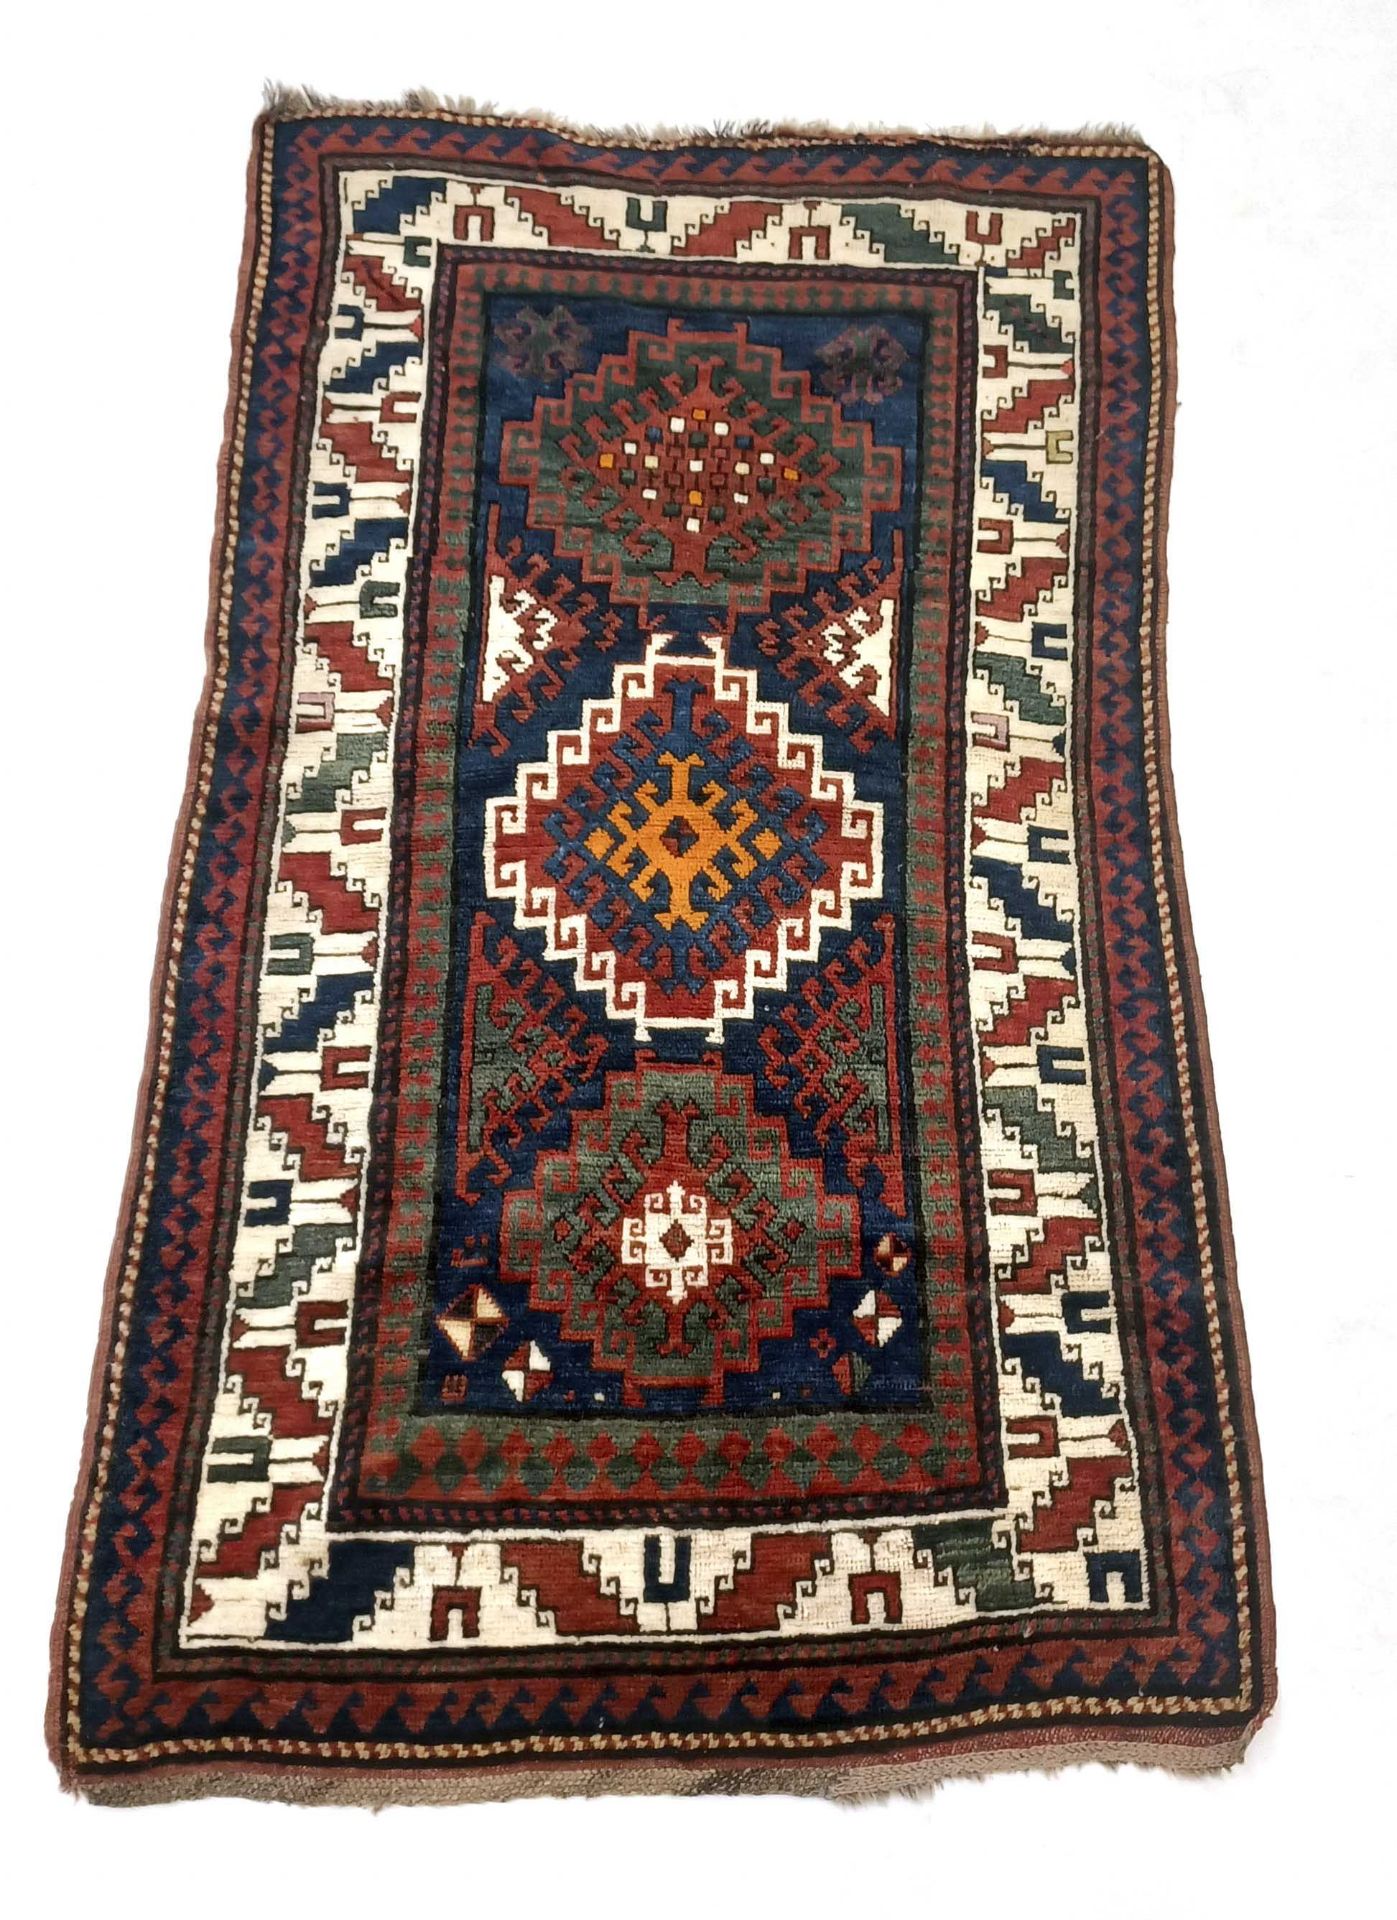 Carpet, Rug, Caucasus. Full pile, fringes short, 187 x 112 cm